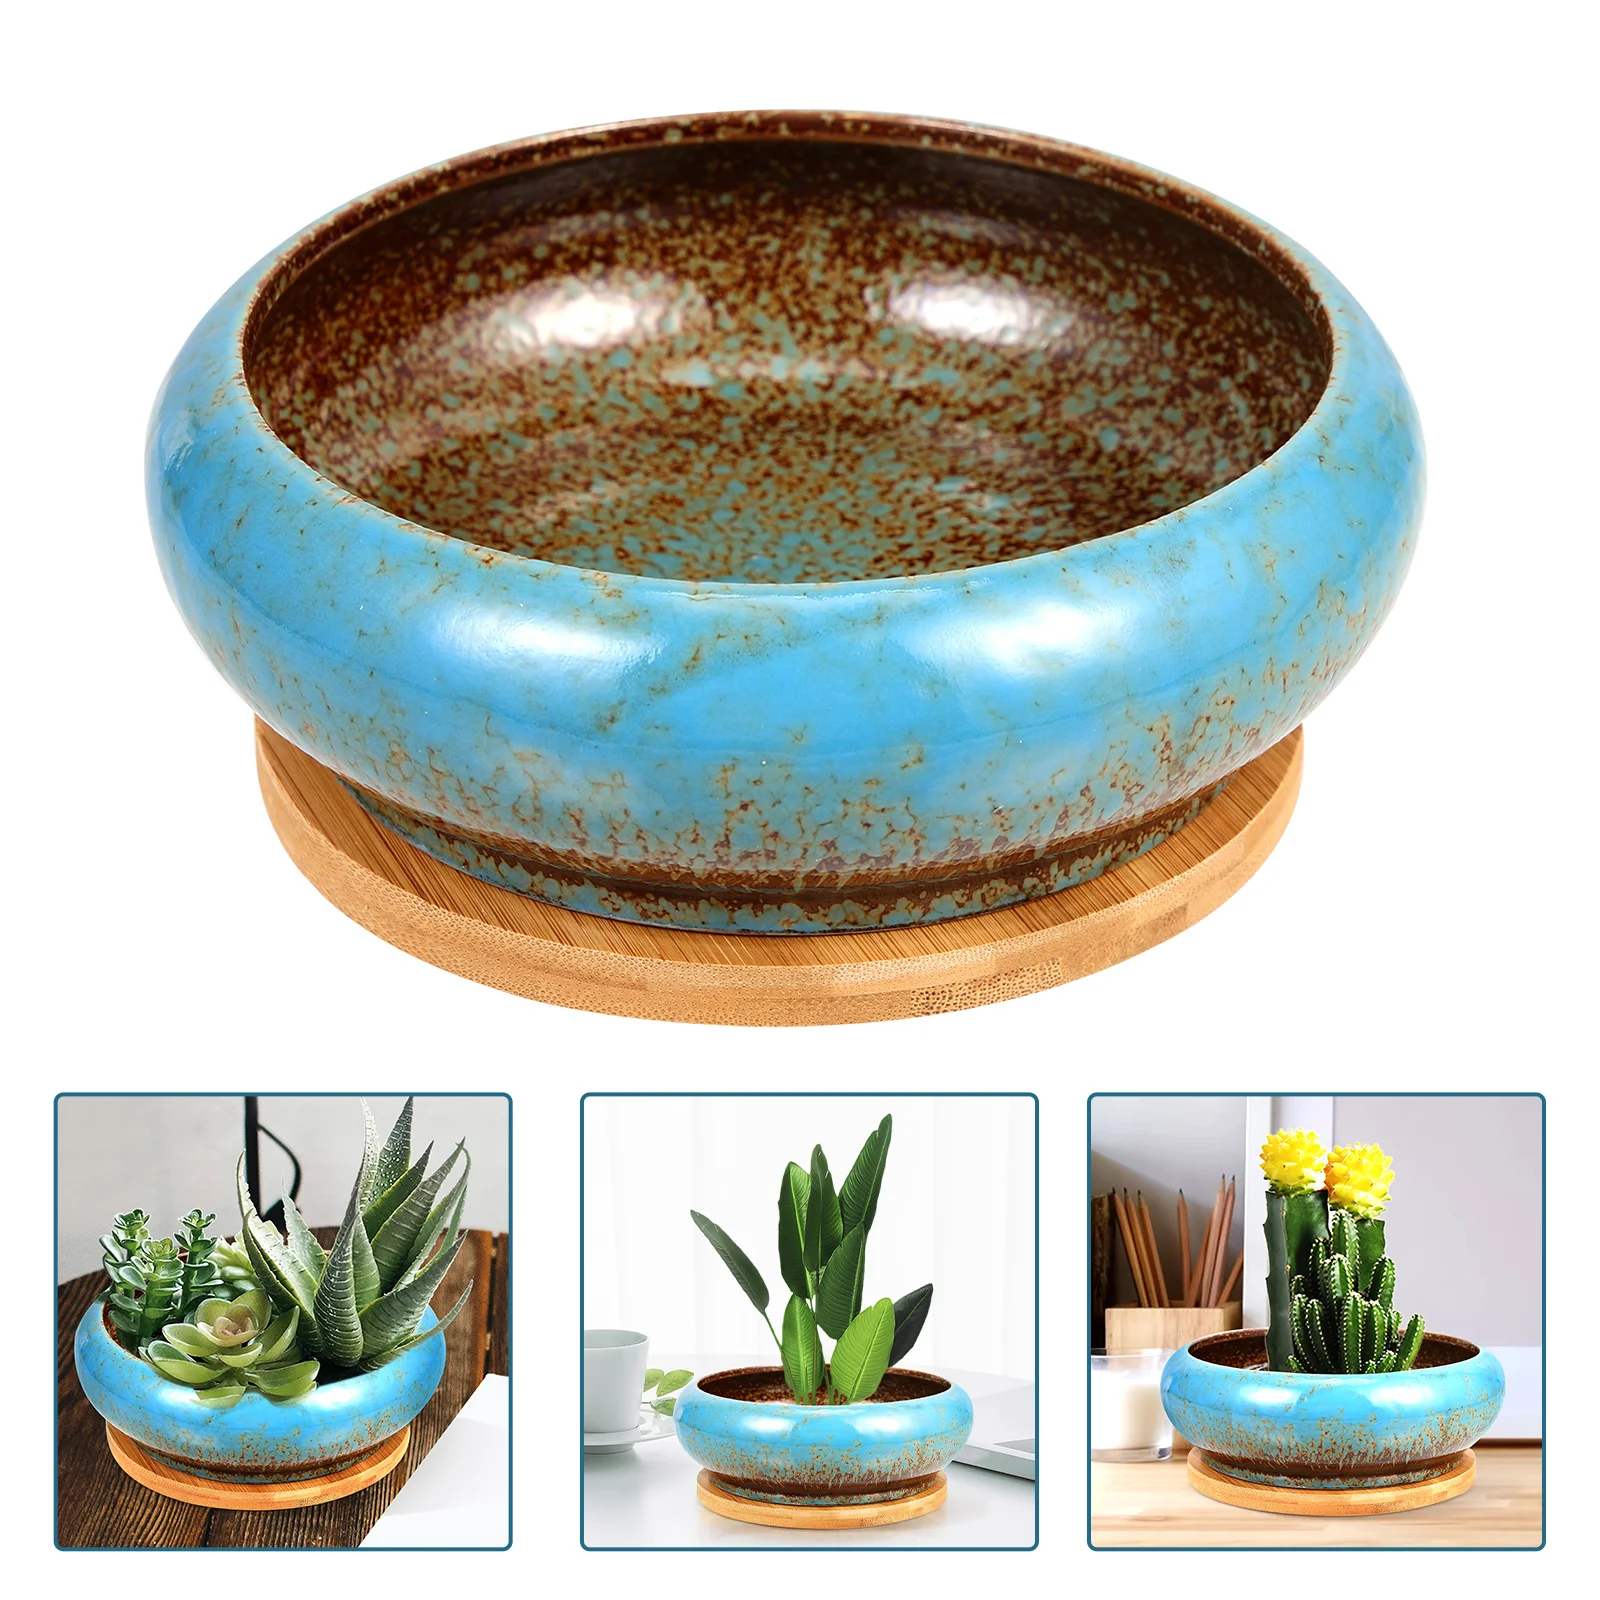 

Pot Succulent Flower Pots Planter Ceramic Succulents Decorative Planters Drainage Porcelain Container Bonsai Marble Shallow